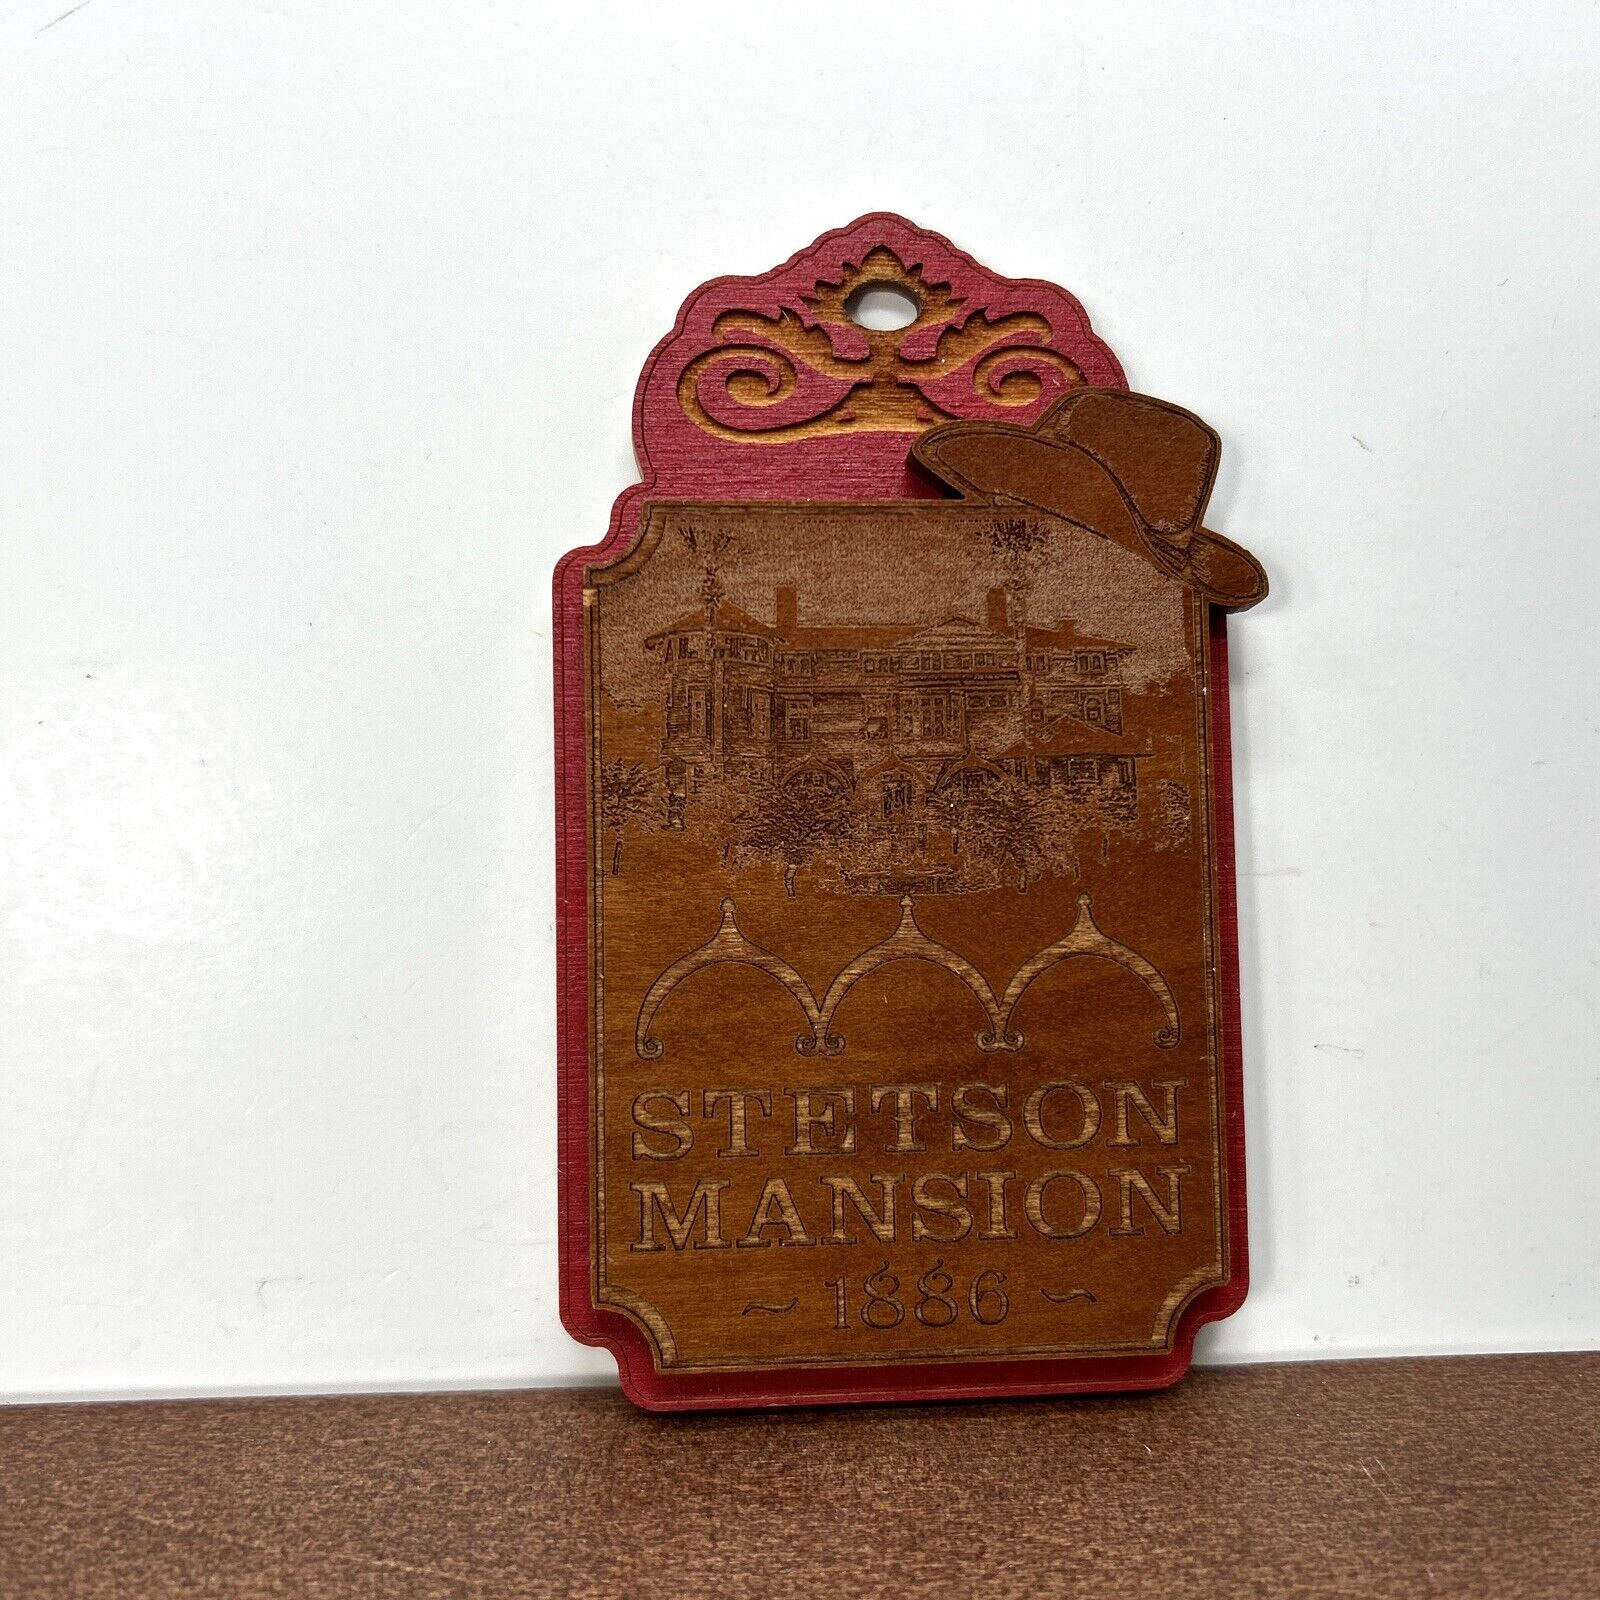 Stetson Mansion 1886 Deland Florida Cowboy Hat Wood Fridge Magnet, Vintage